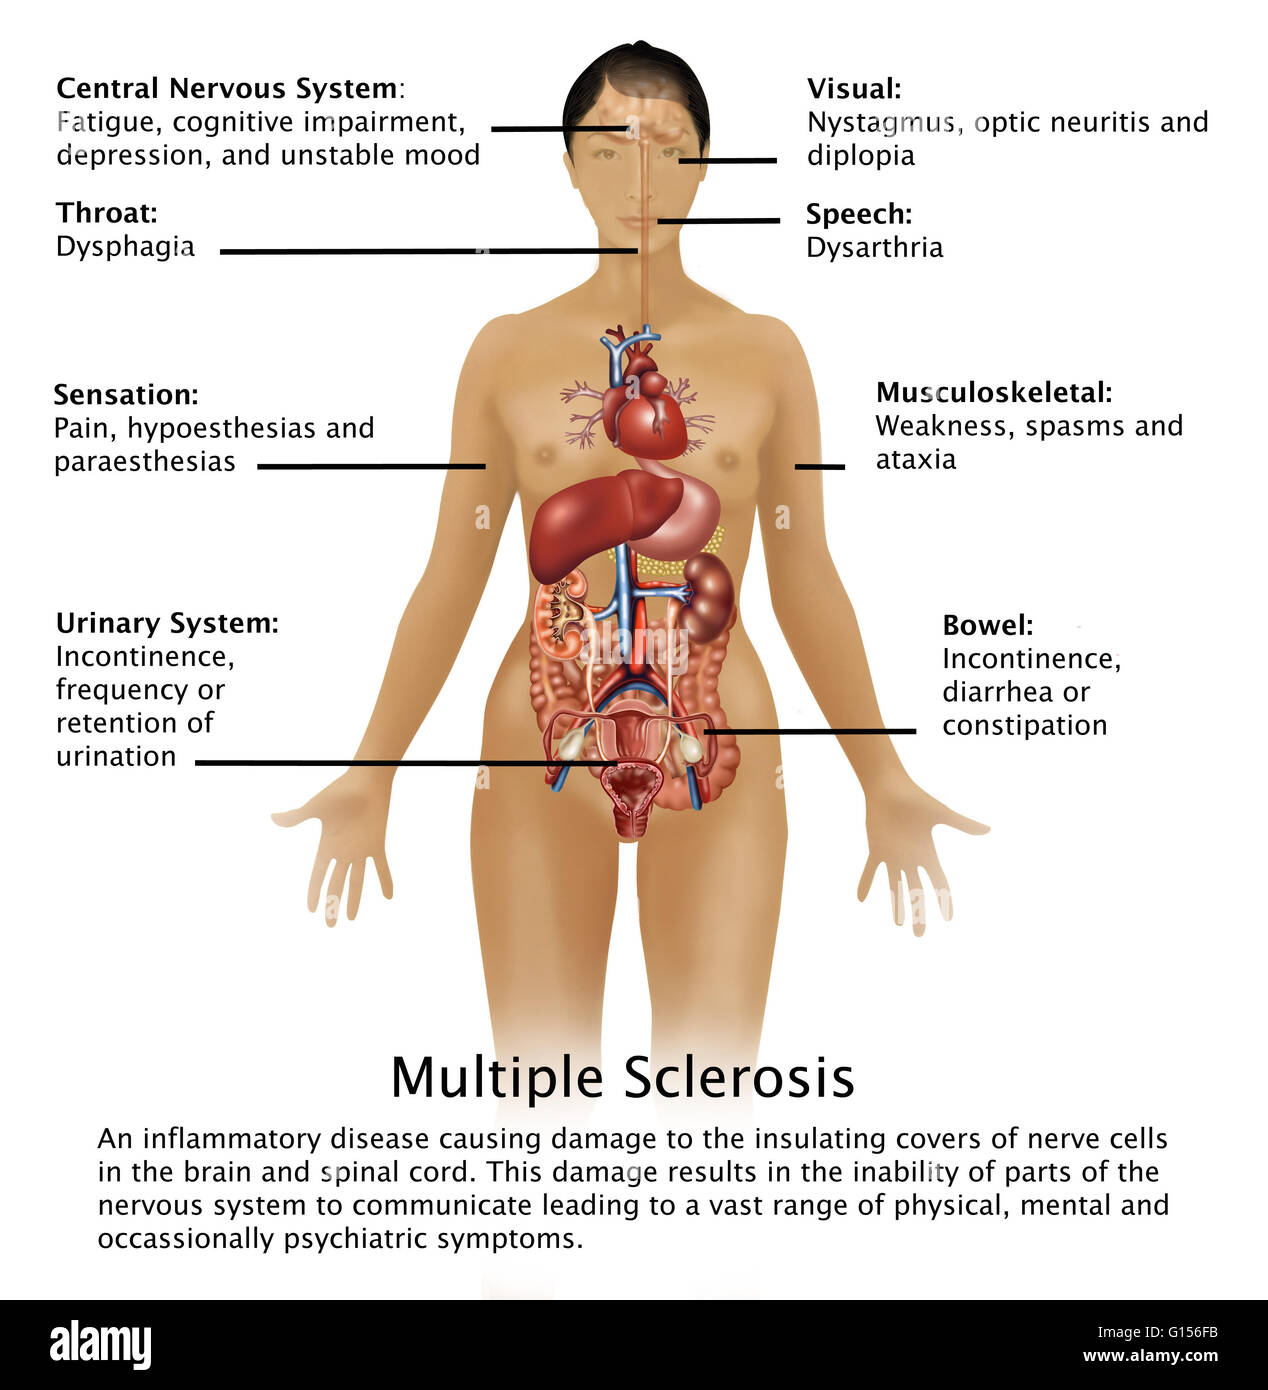 Schéma montrant les symptômes de la sclérose en plaques et leur emplacement  dans le corps humain. La sclérose en plaques est une maladie inflammatoire  causant des dommages à l'isolant couvre des cellules